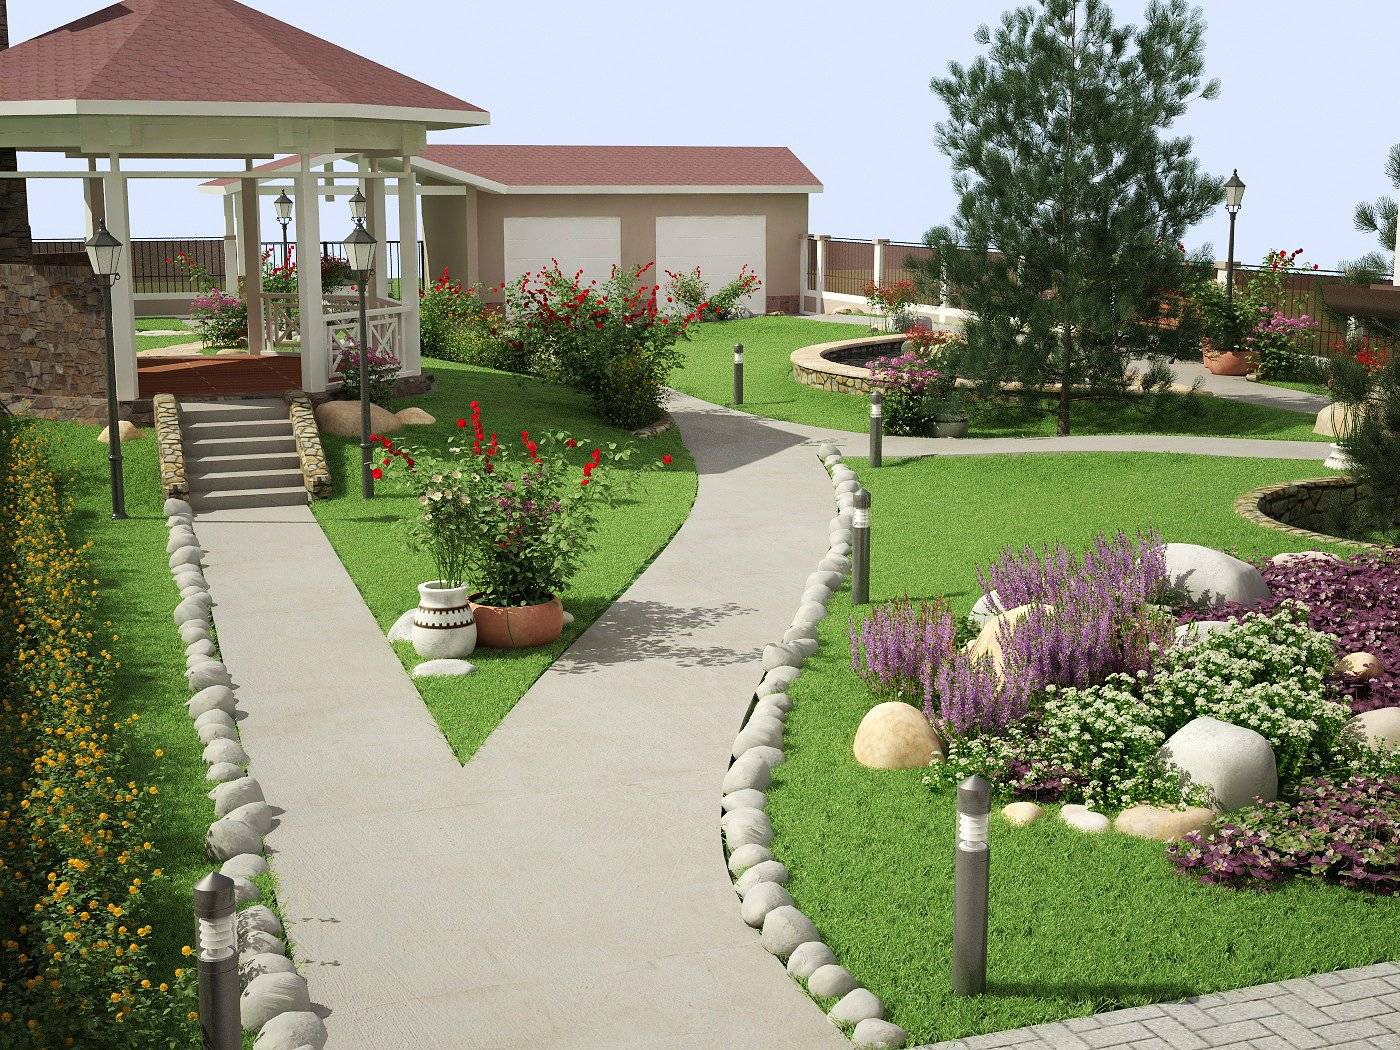 Как сделать ландшафтный дизайн двора частного дома своими руками красиво? +фото и видео